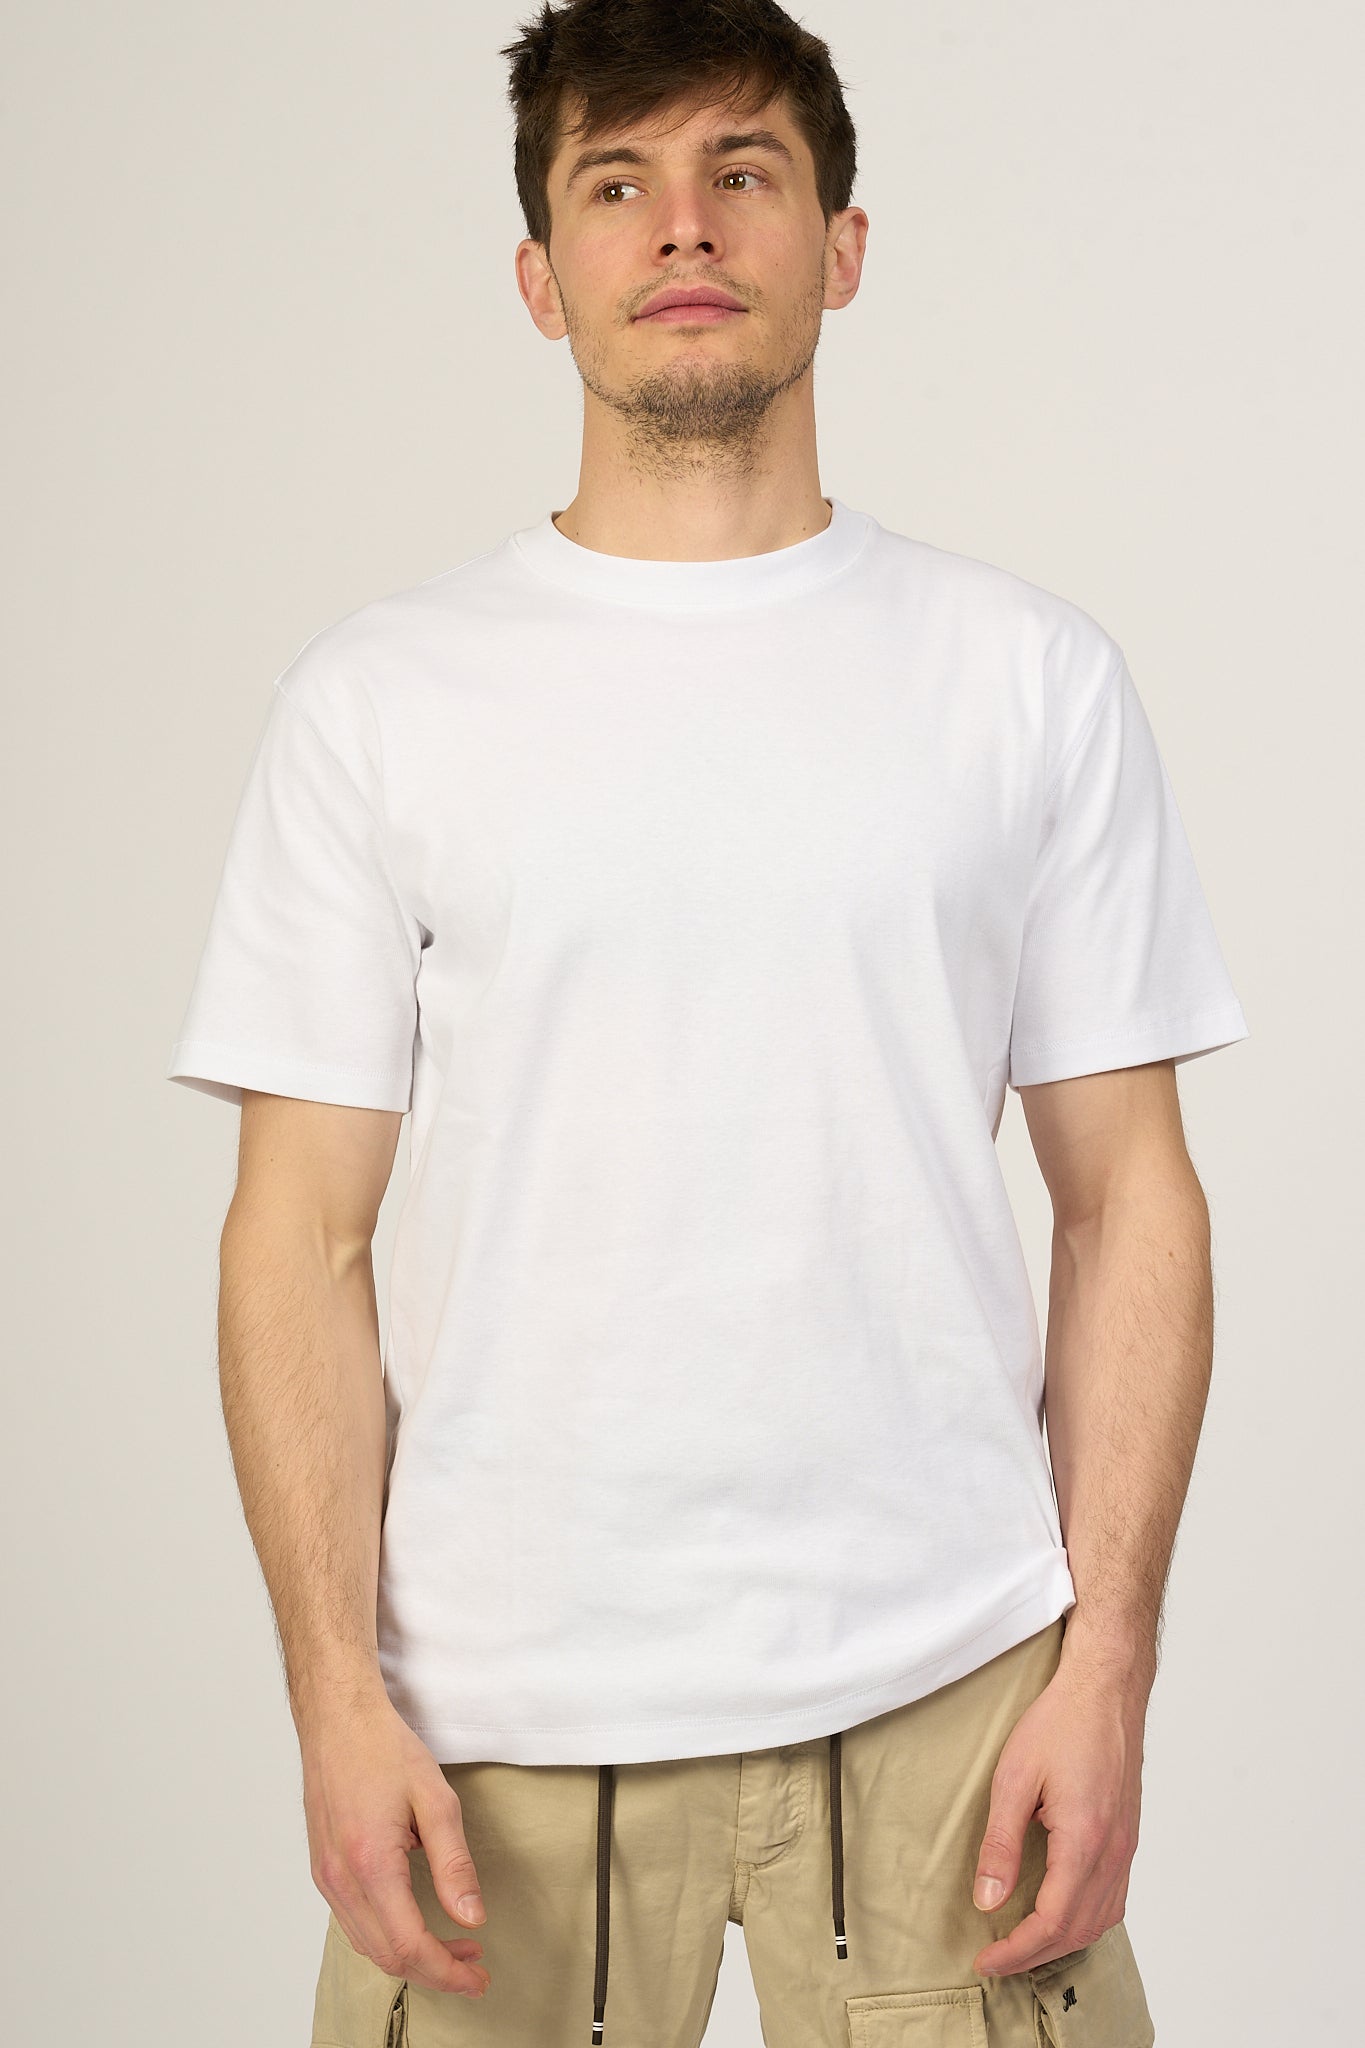 Hosio T-shirt Bianco Uomo-1